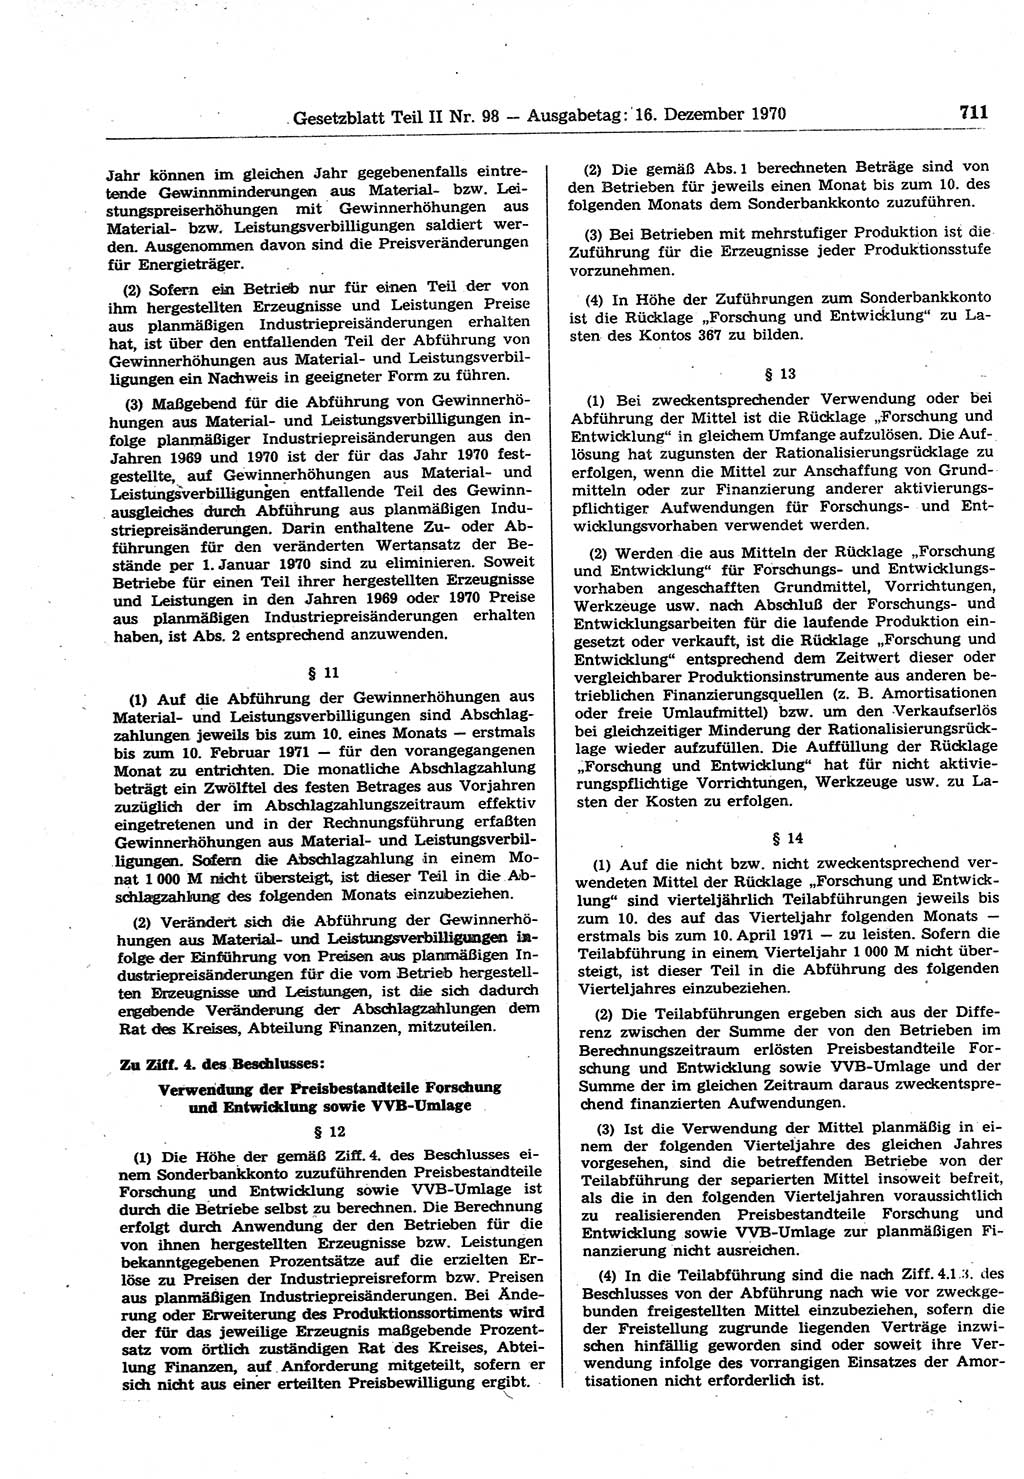 Gesetzblatt (GBl.) der Deutschen Demokratischen Republik (DDR) Teil ⅠⅠ 1970, Seite 711 (GBl. DDR ⅠⅠ 1970, S. 711)